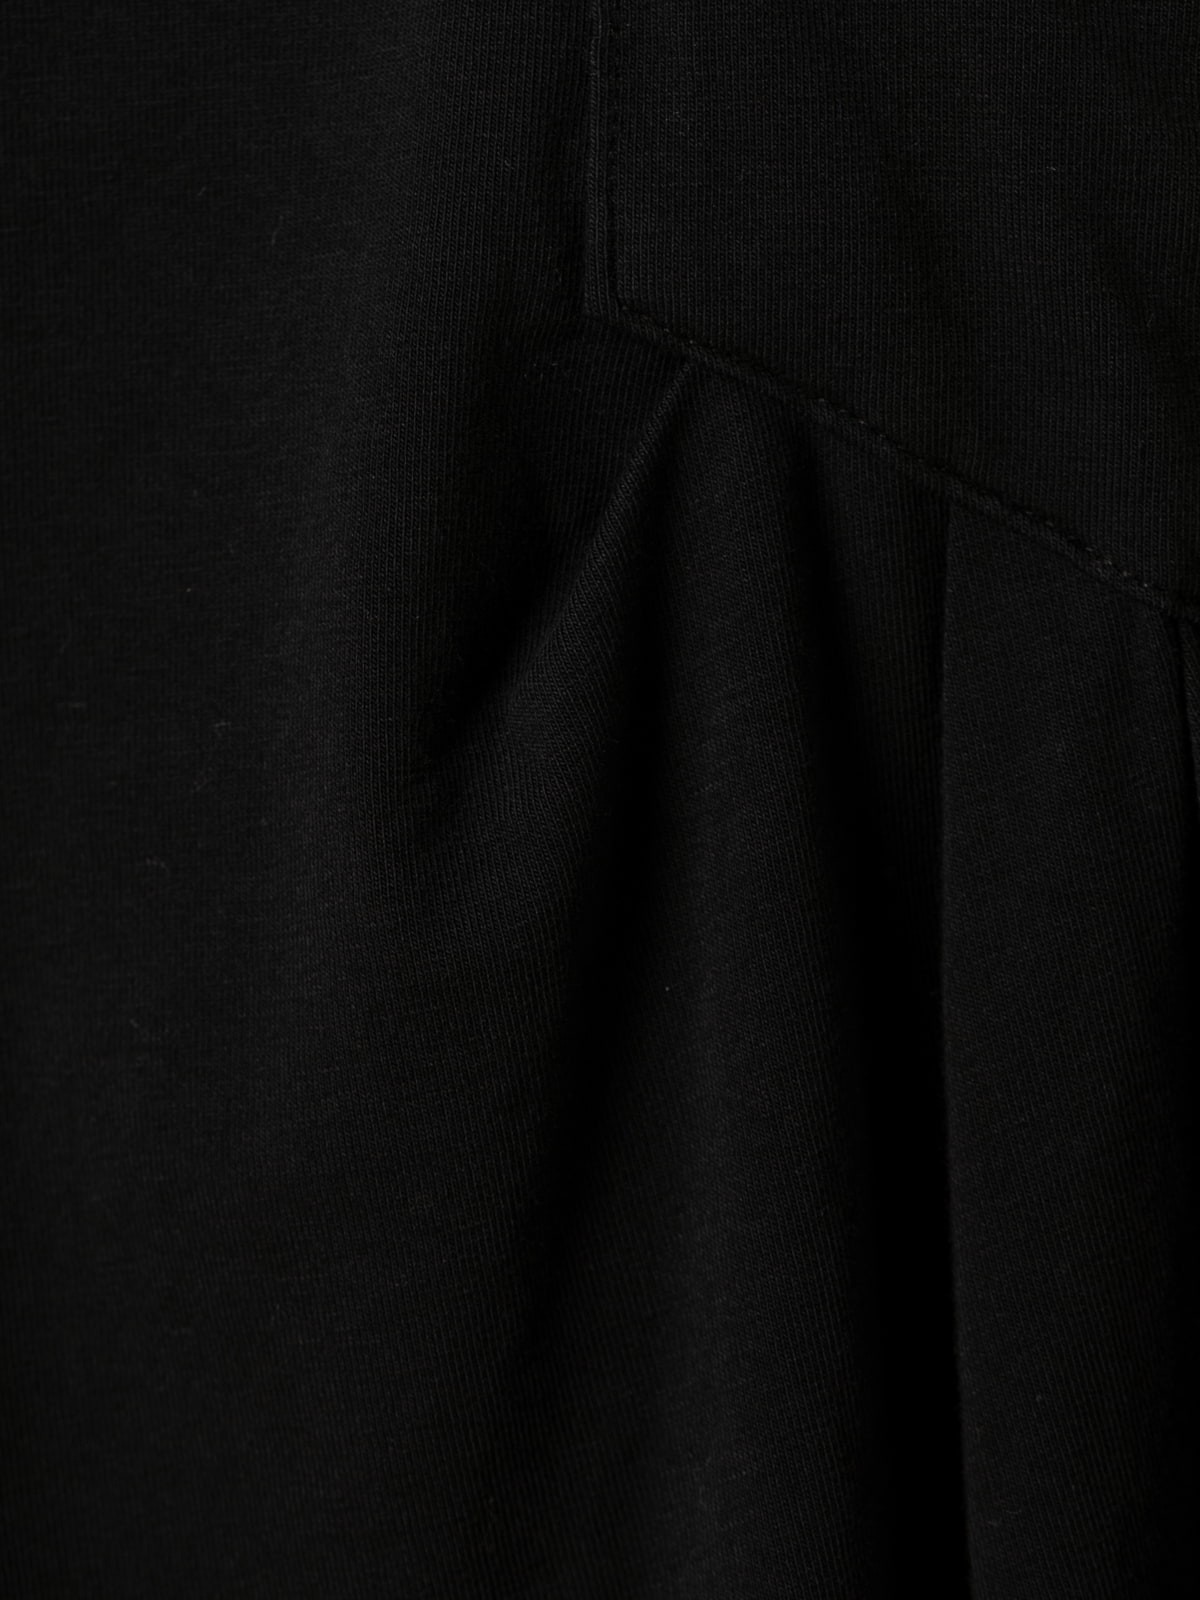 Camiseta de algodón 100% bolsillo diseño mom fit color Negro